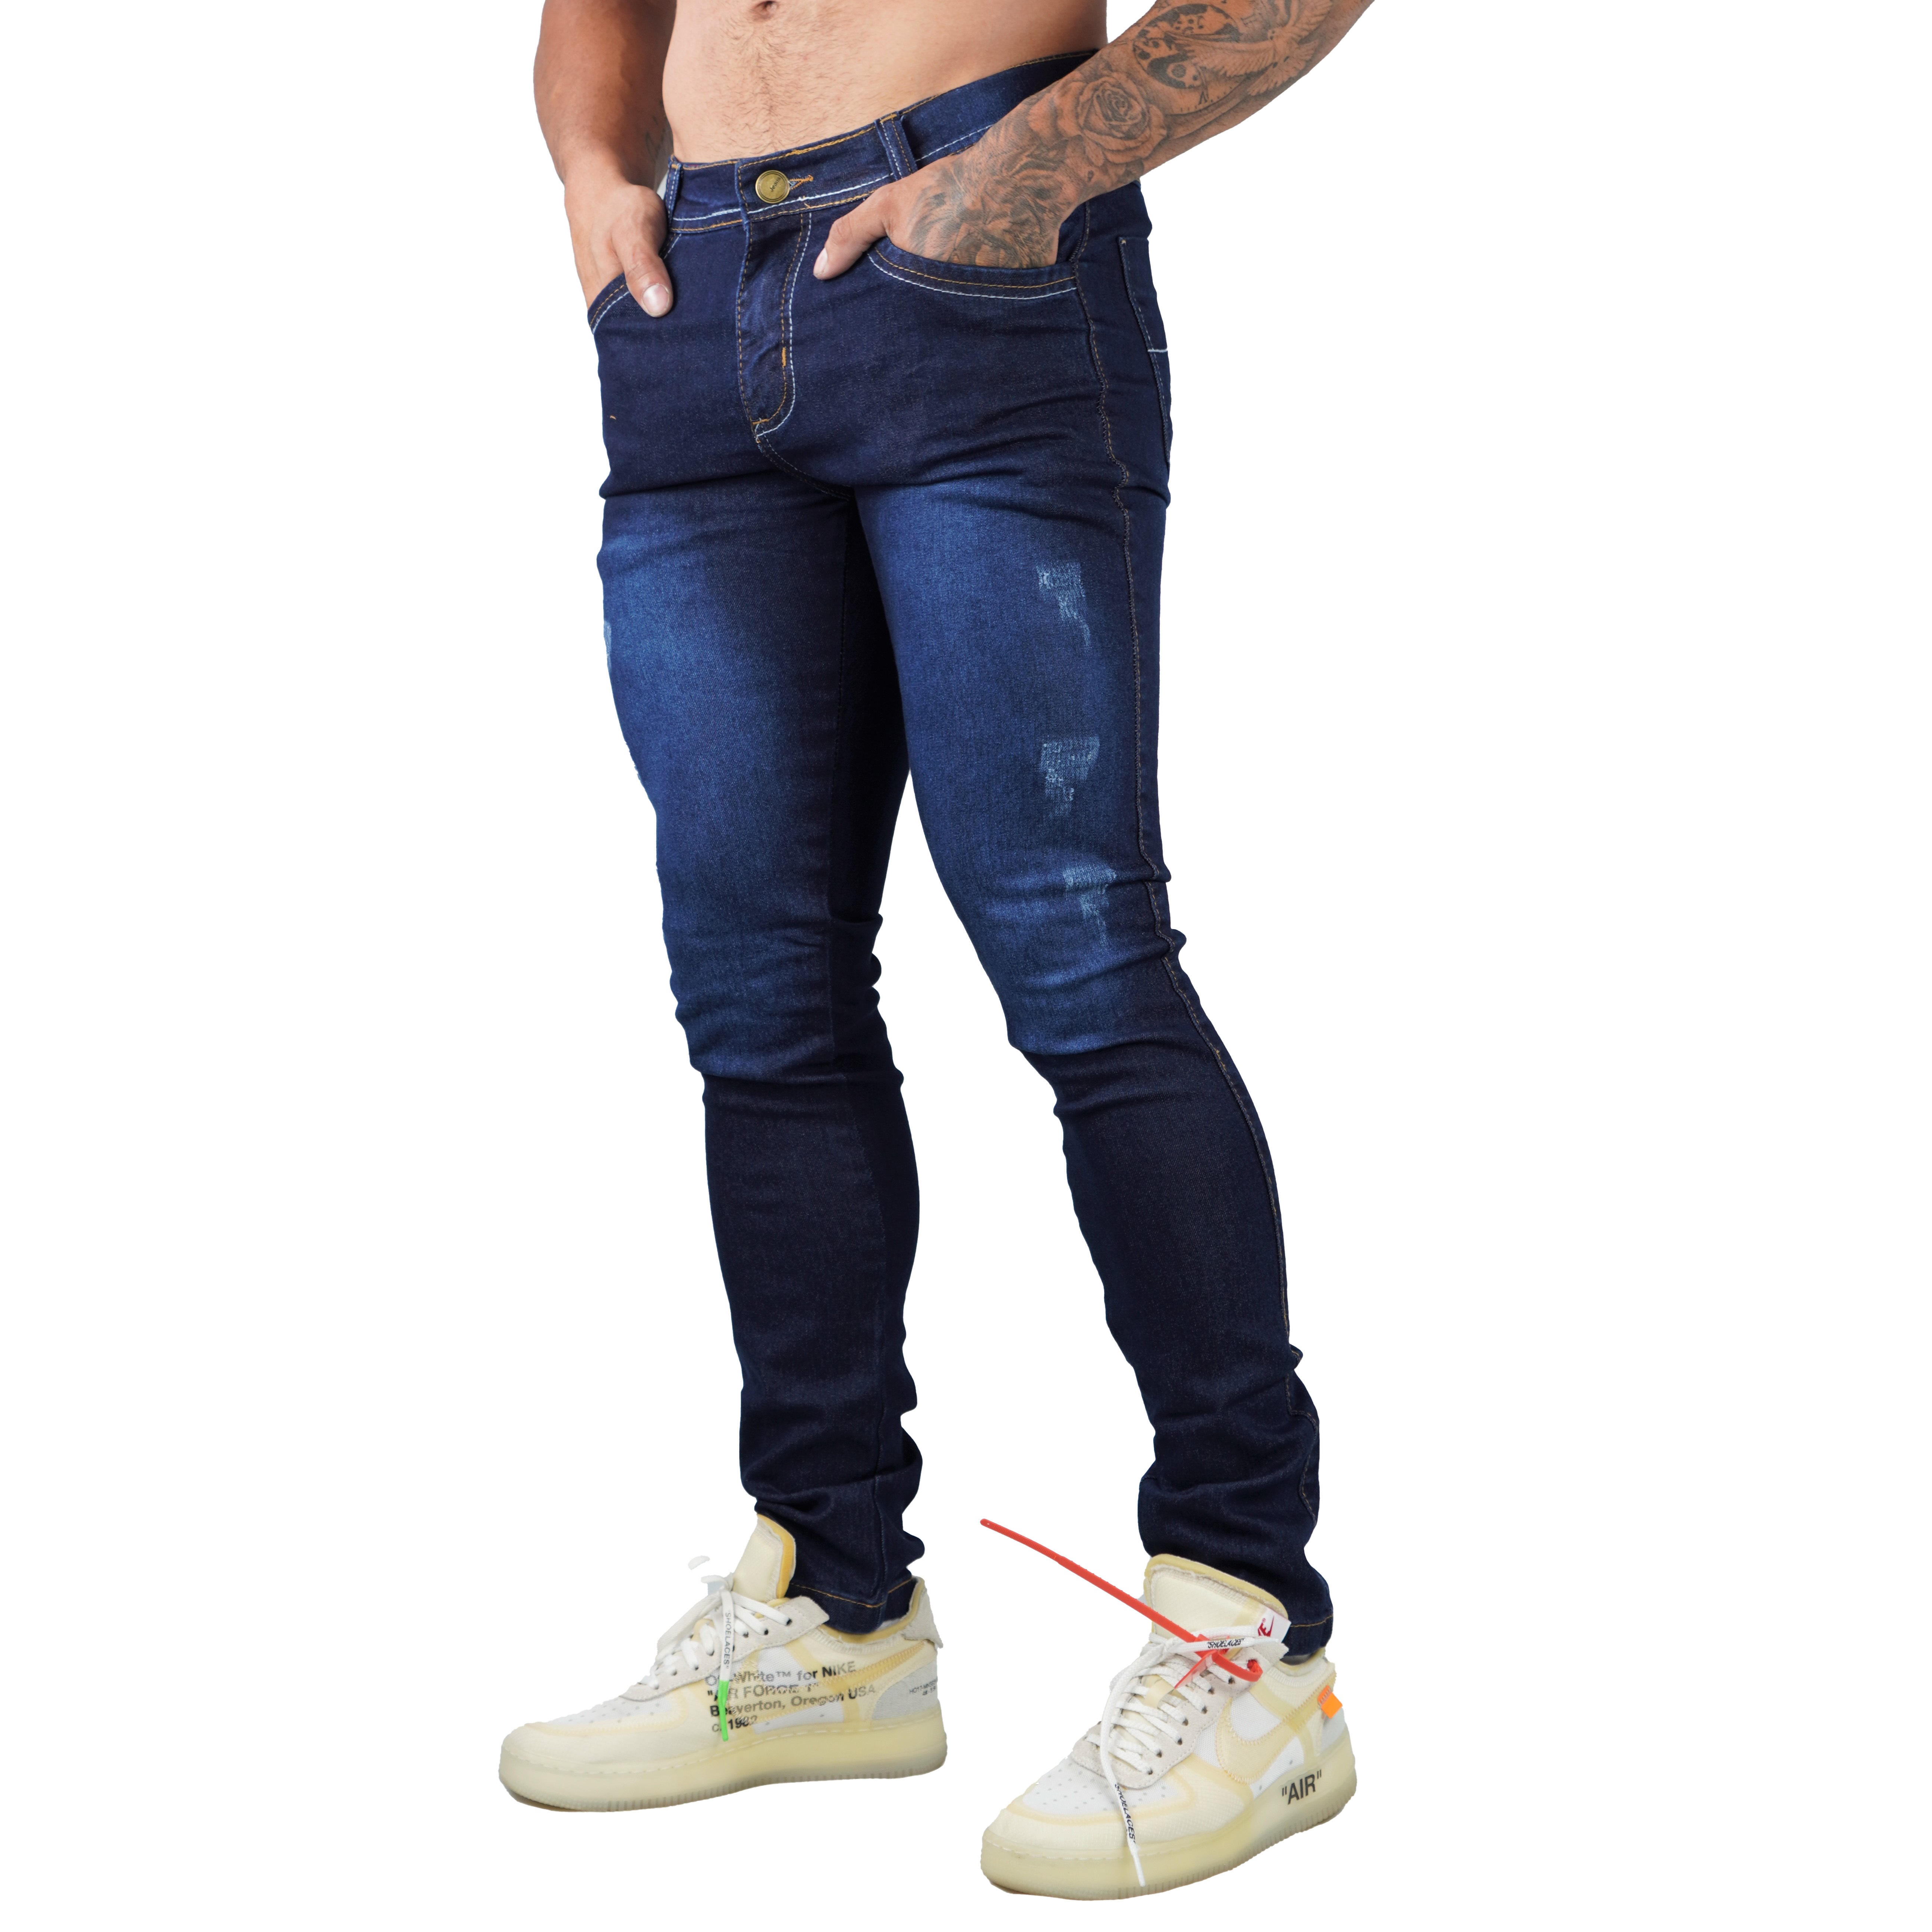 Calça Jeans Masculina Sarja Skinny Slim Com Lycras E Lavagem Escura.  Entrega Rápida Venda Nacional - Compra Digital BR